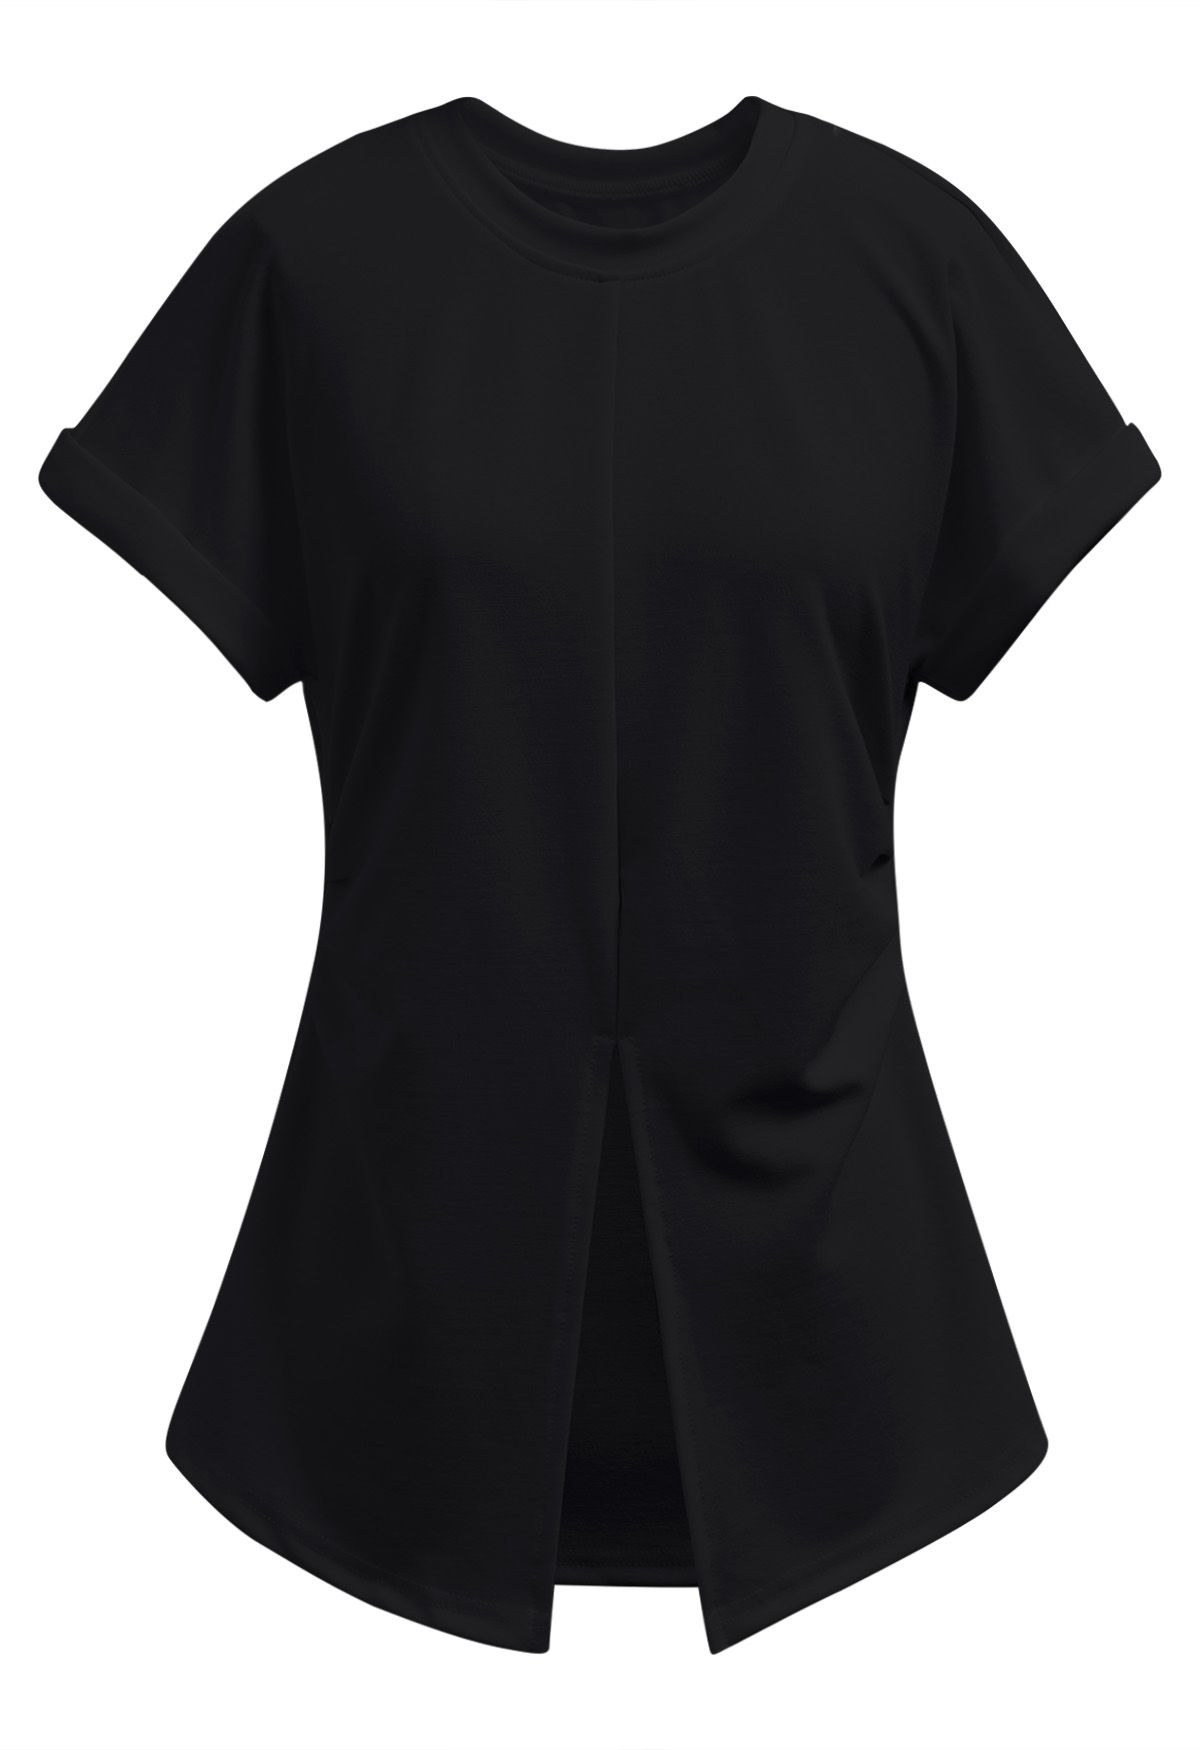 Camiseta con dobladillo dividido fruncido en negro